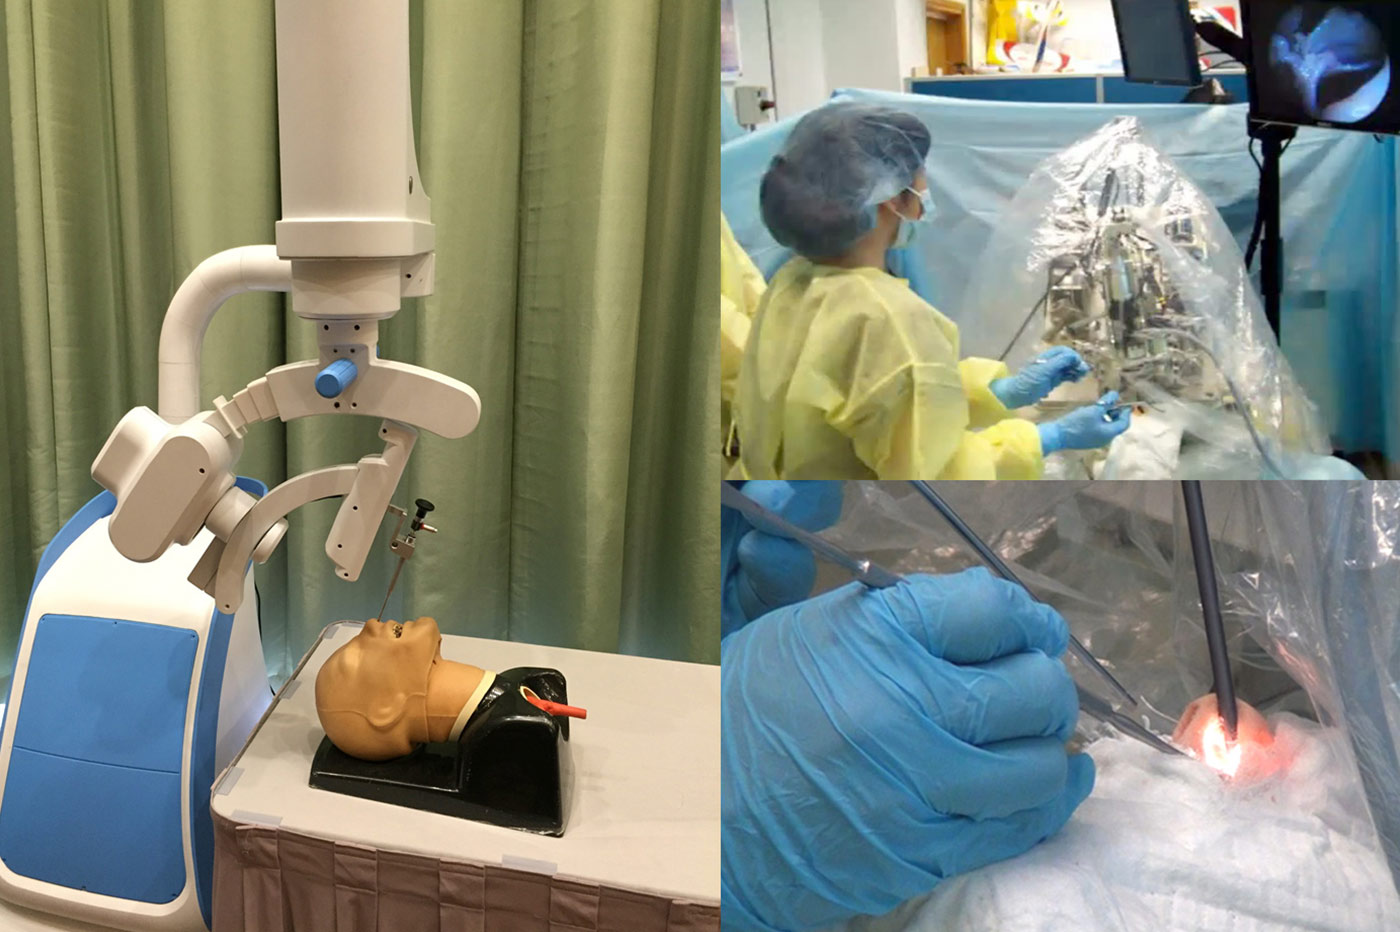 劉教授把視覺機械系統技術應用到醫學上，其中一個系統可智能操縱內窺鏡，醫生可騰出雙手施行手術